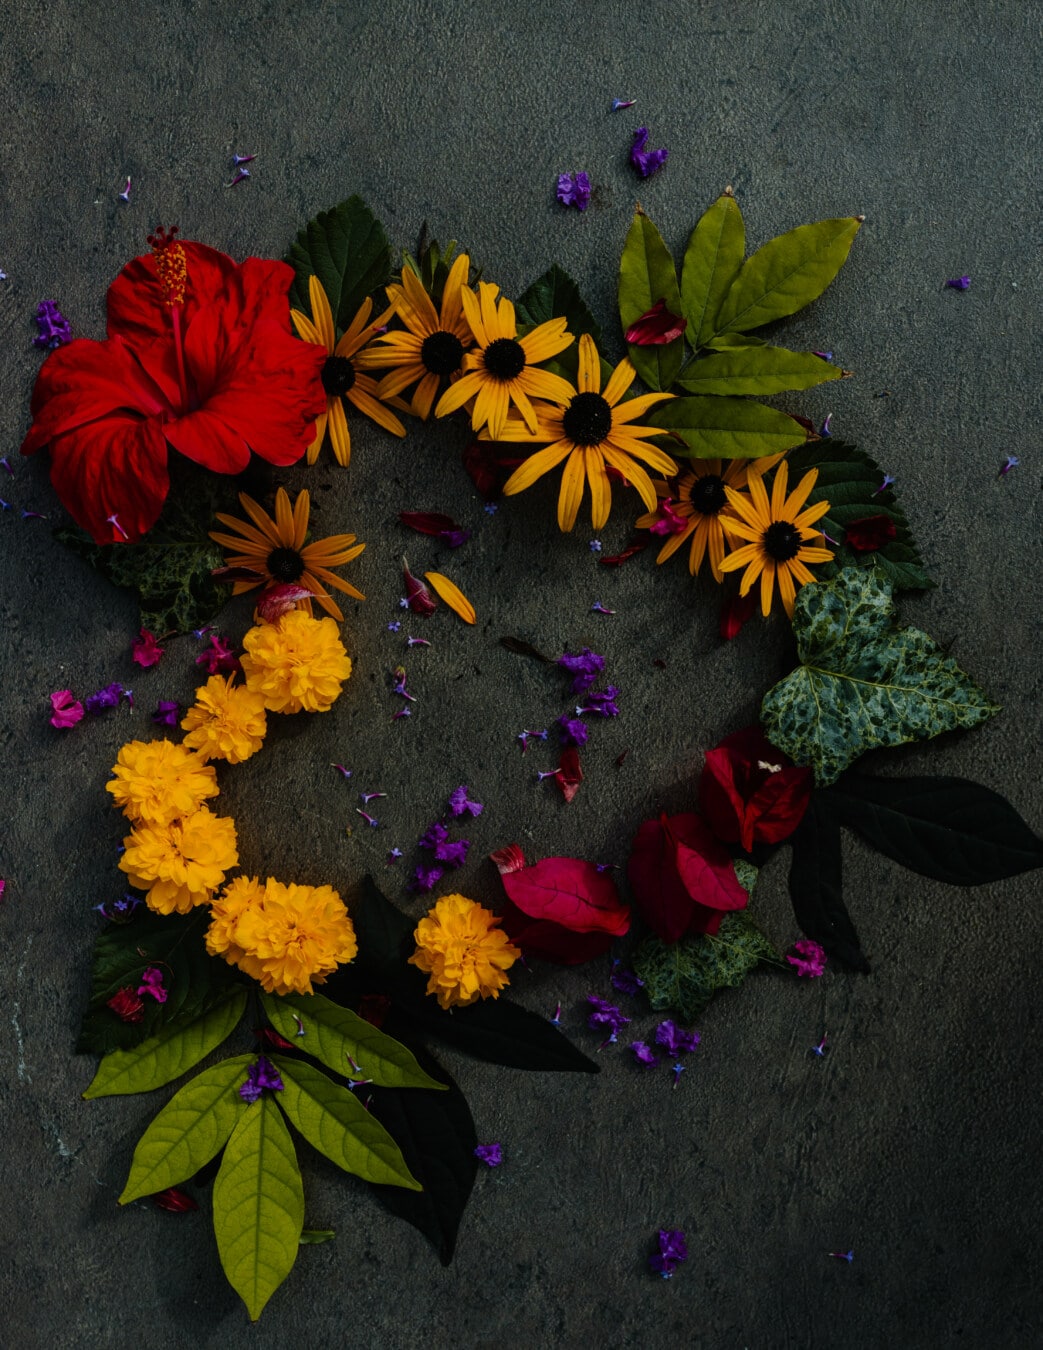 décoration, fleurs, forme, coeur, plante, arrangement, fleur, feuille, amour, nature morte